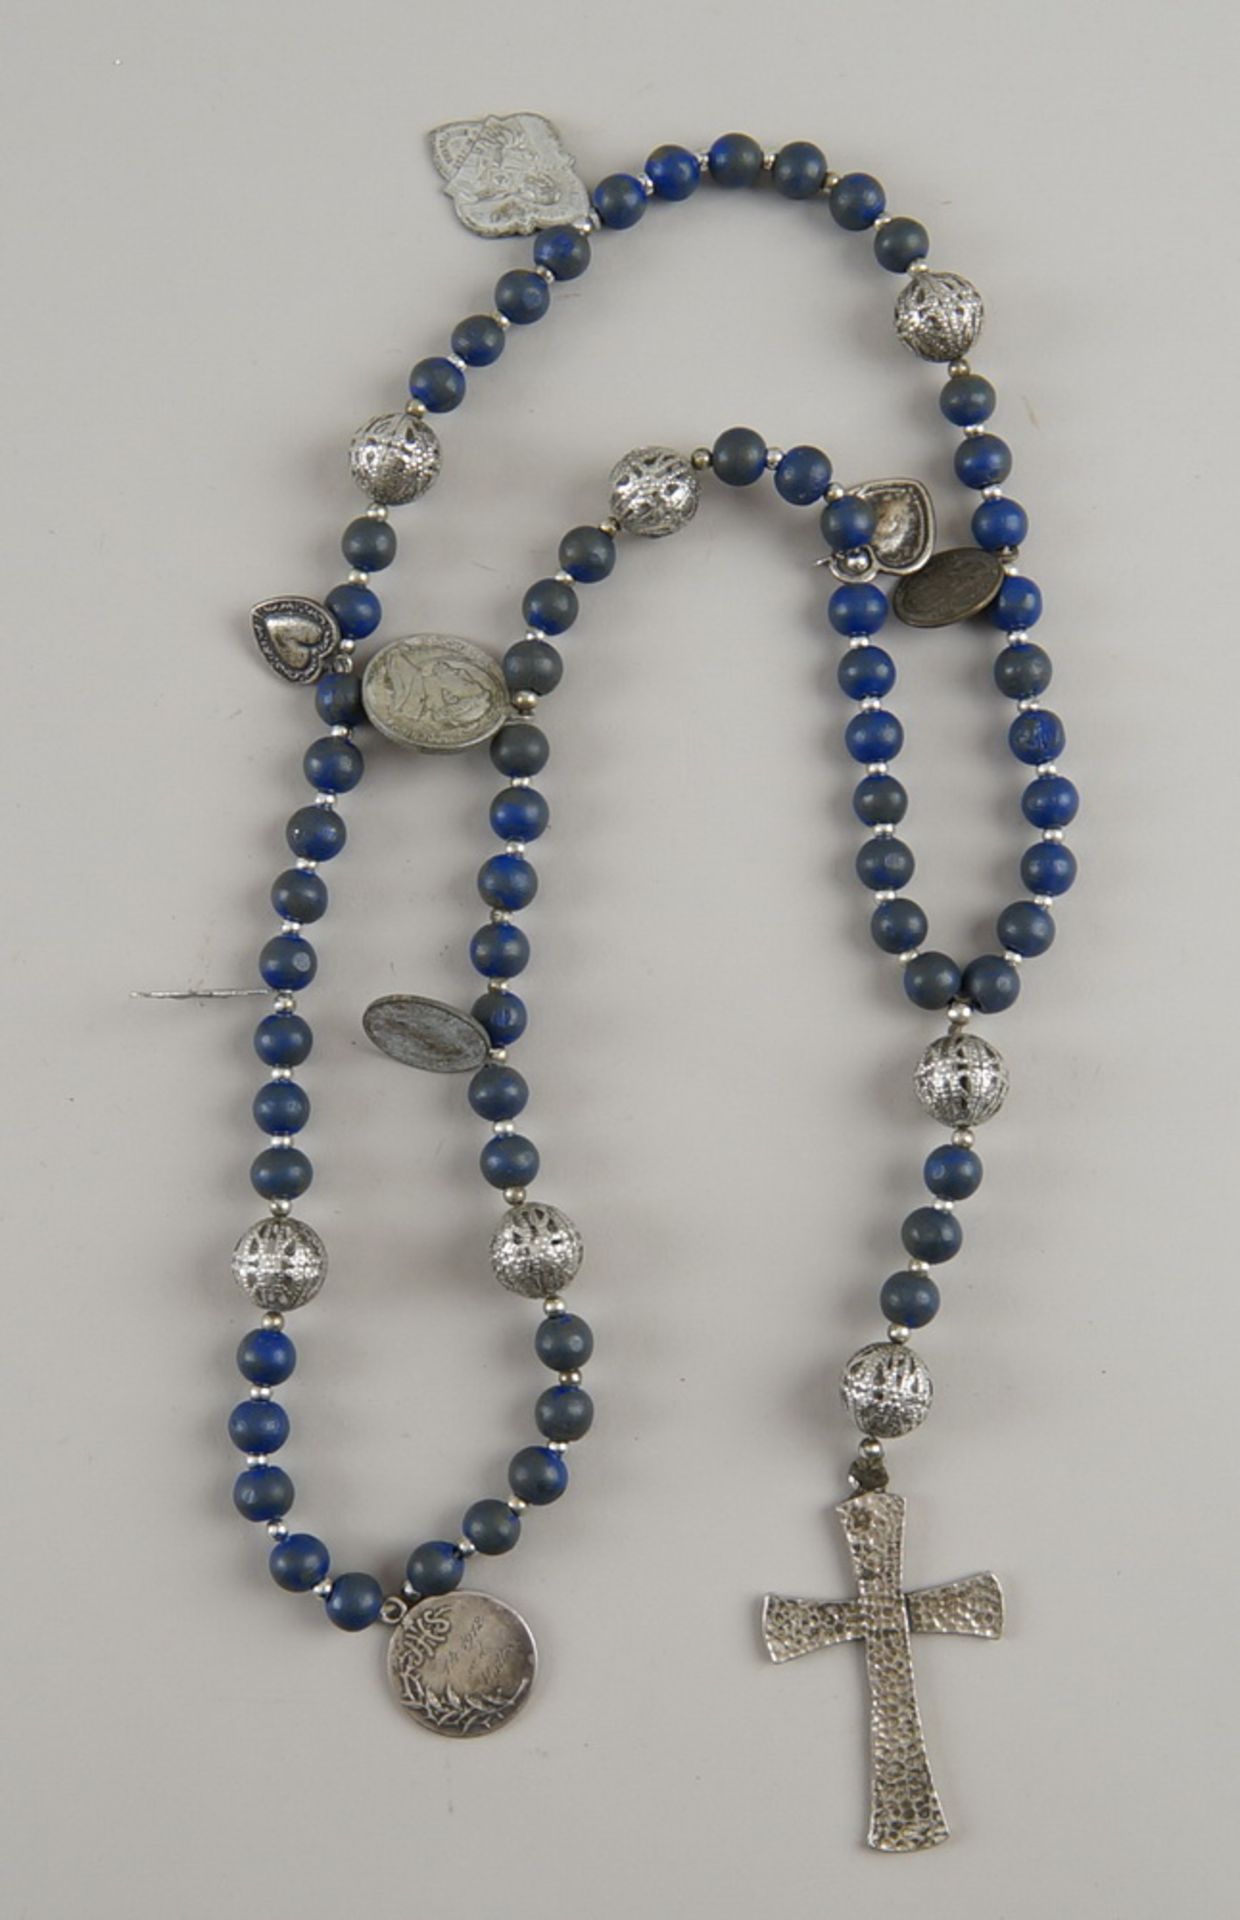 Rosenkranz mit blauen Perlen, Silberkugeln und weiteren Behängnissen, Kreuz, L 53cm - Bild 3 aus 3